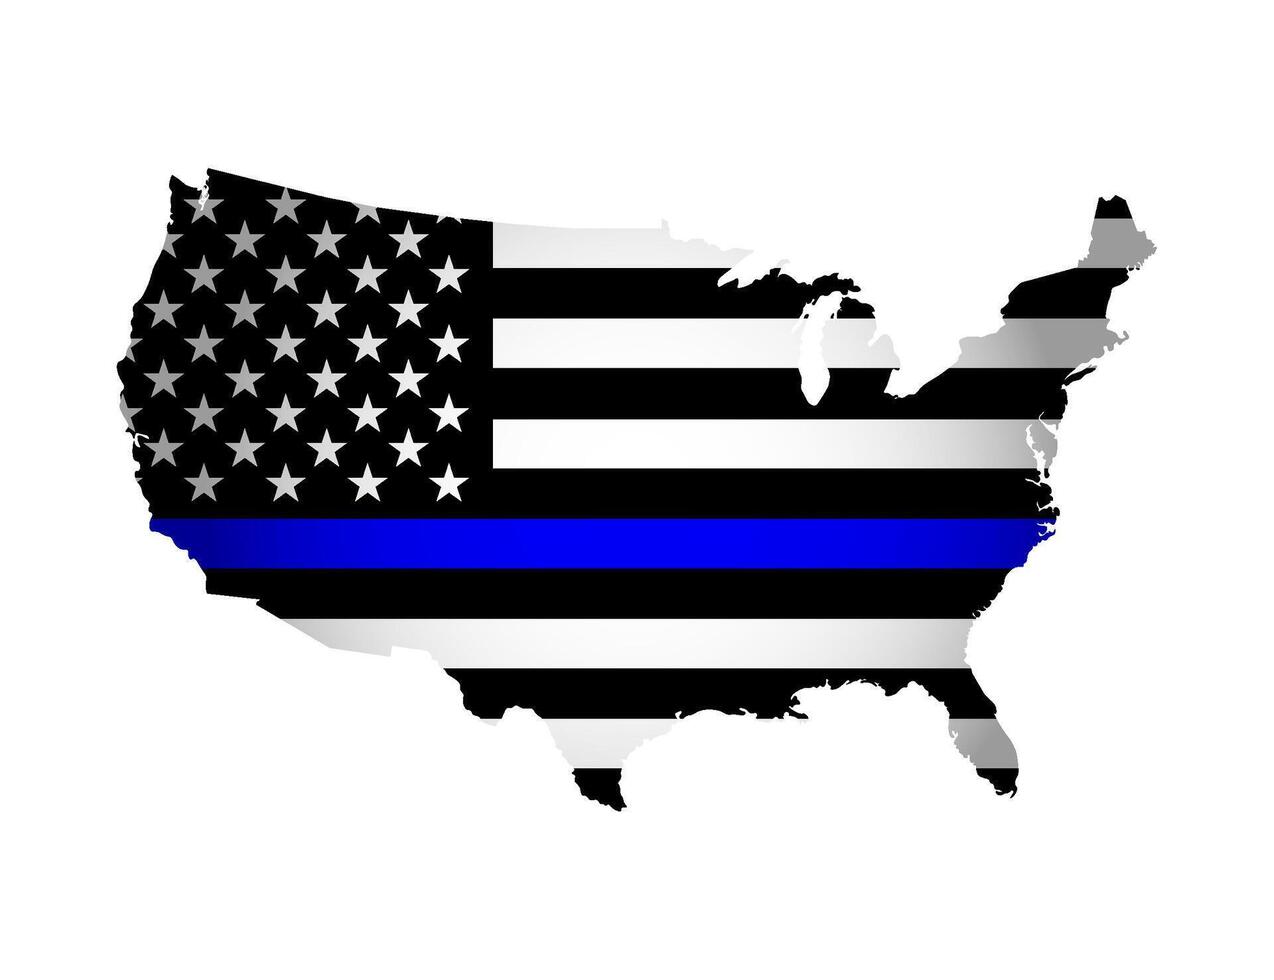 Vektor Illustration mit amerikanisch National Flagge mit gestalten von USA Karte. Sterne und Streifen. Volumen Schatten auf das Karte. National Flagge im schwarz und Weiß Farben und dünn Blau Linie. Polizei Unterstützung Symbol